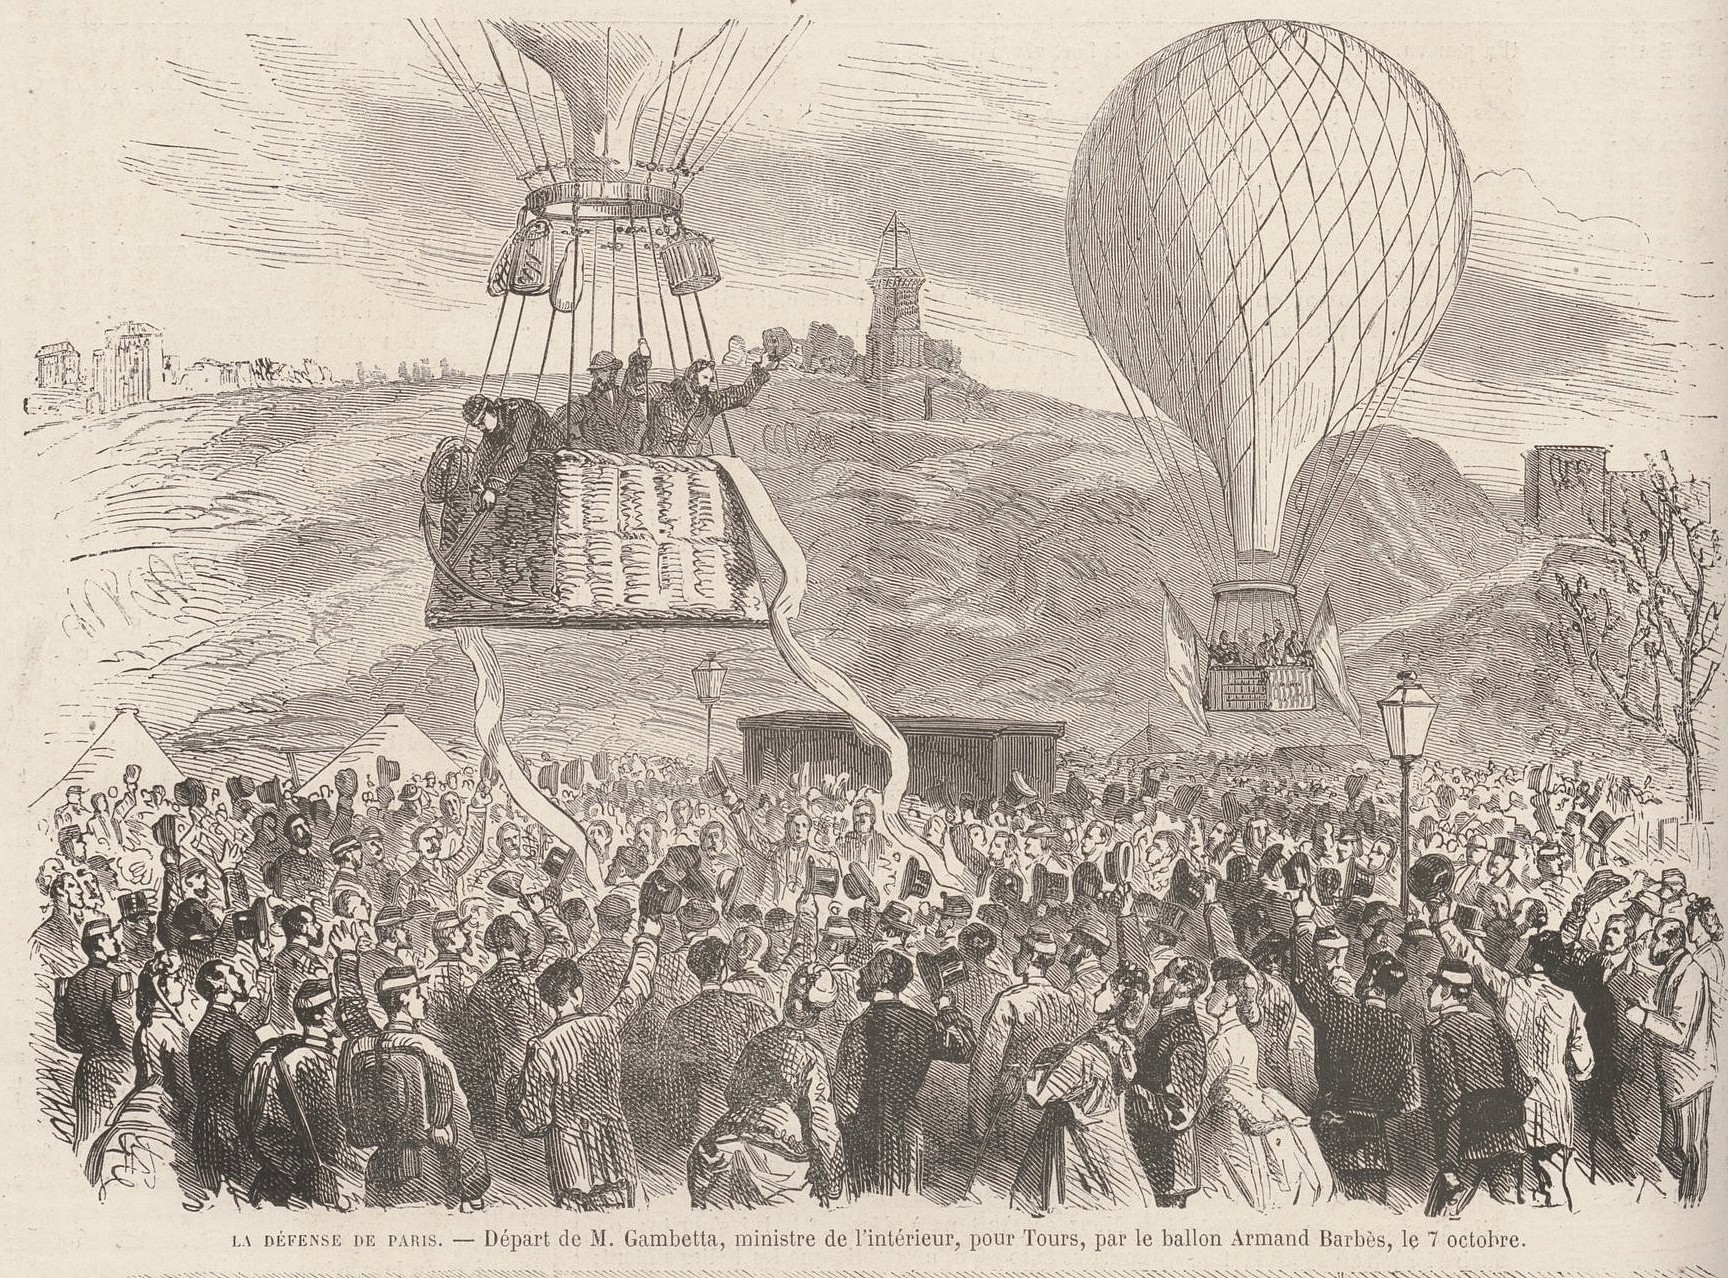 Le 7 octobre, départ en ballon-poste de Gambetta, ministre de l'Intérieur. (Le Monde Illustré du 15 octobre 1870)